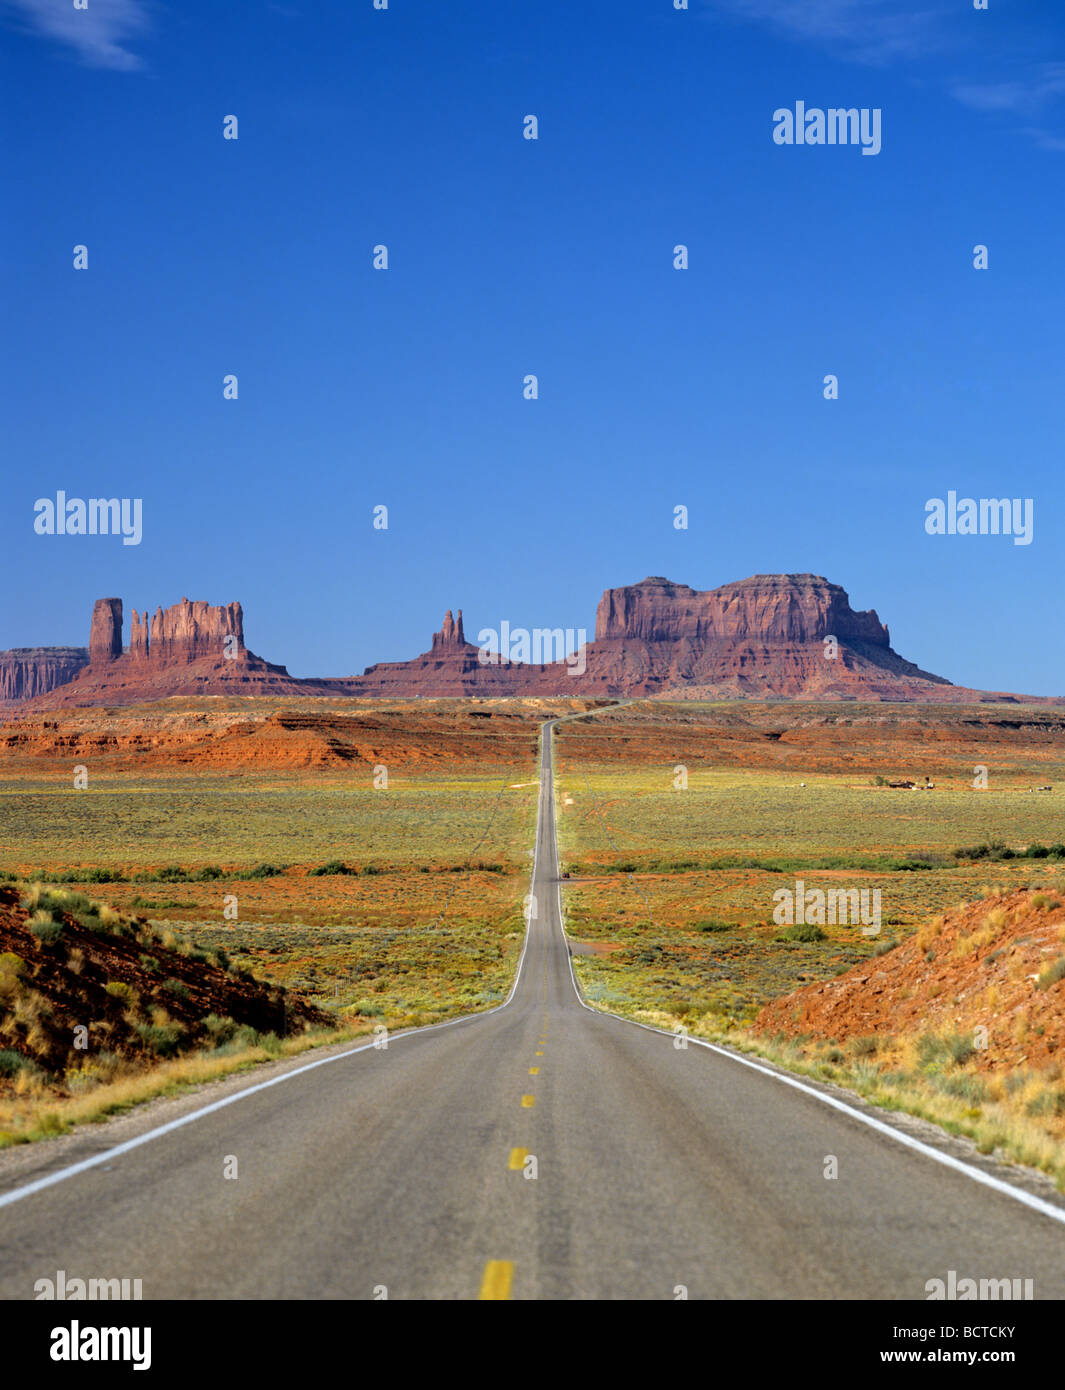 Strada alla Monument Valley Navajo Nation Reservation, Colorado Plateau, Arizona, Stati Uniti d'America Foto Stock